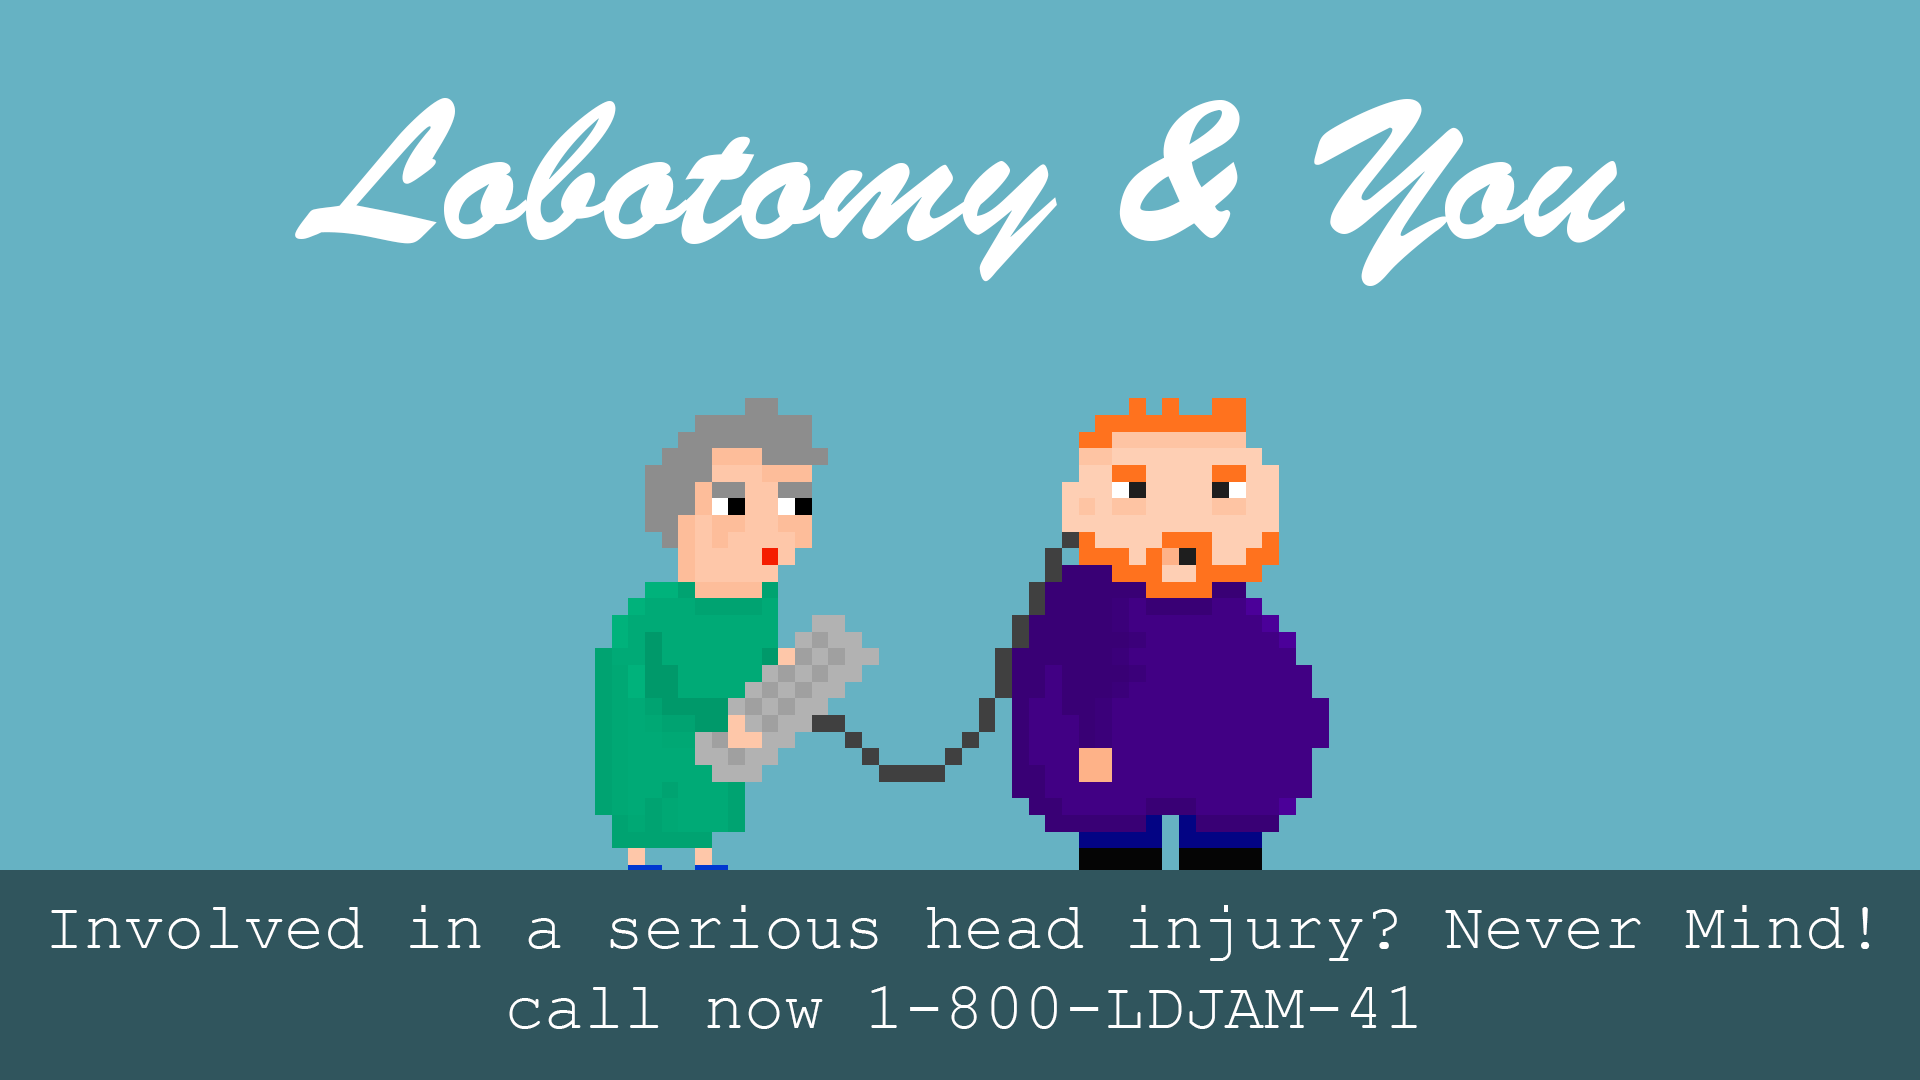 Lobotomy & You